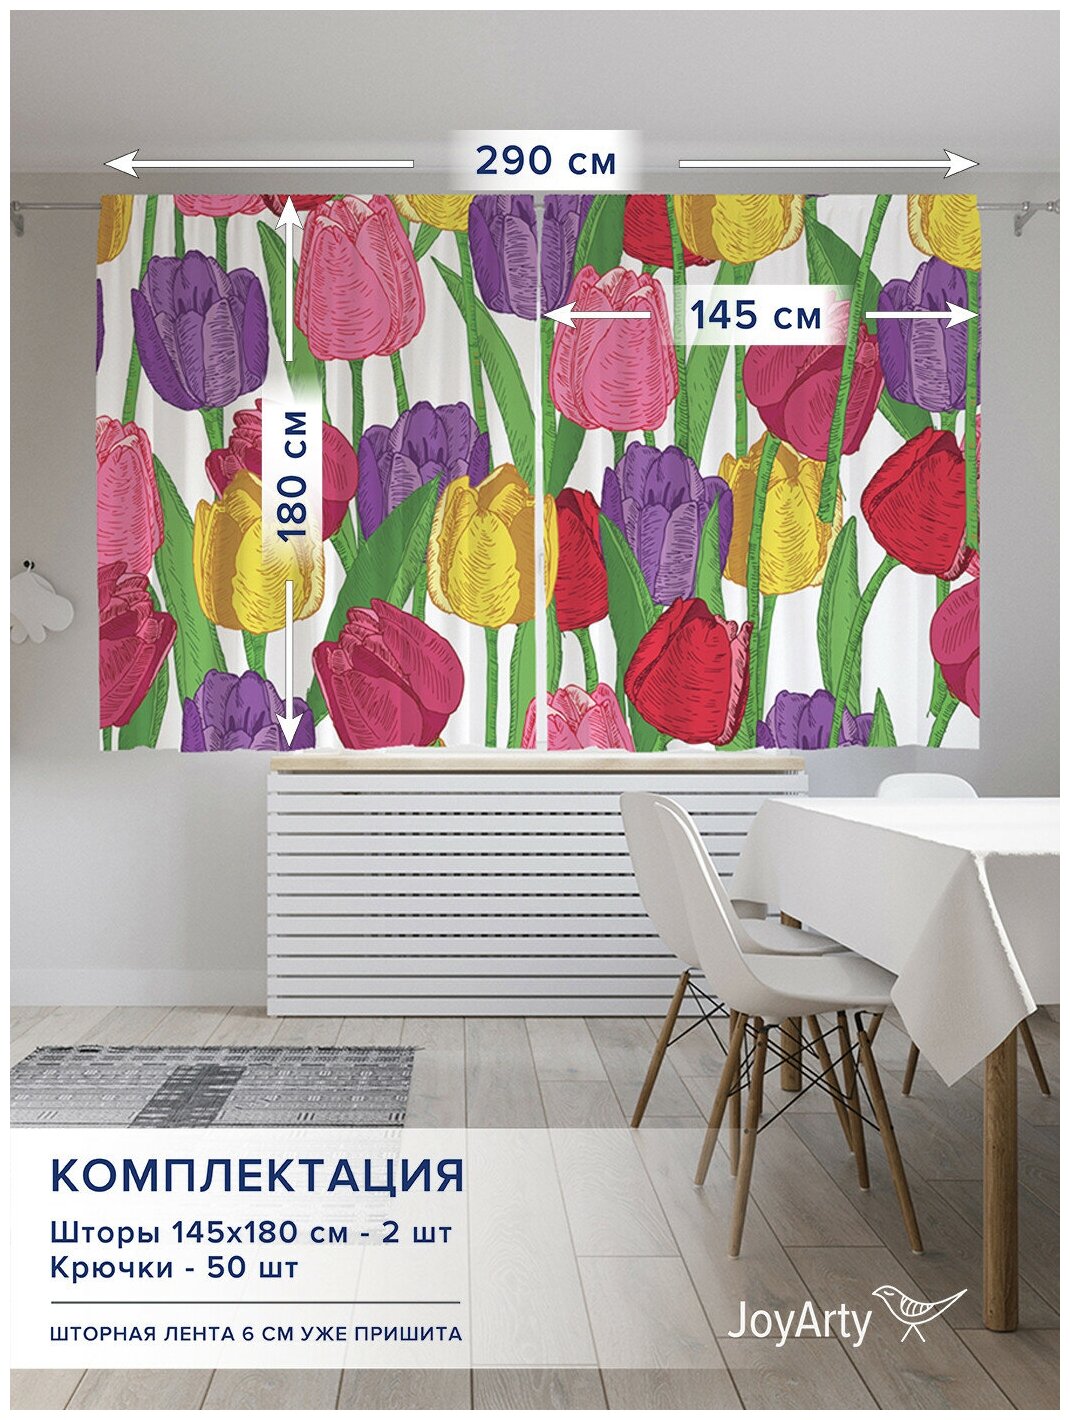 Фотошторы для кухни и спальни JoyArty Oxford DeLuxe "Поляна тюльпанов", 2 полотна со шторной лентой шириной по 145 см, высота 180 см - фотография № 3